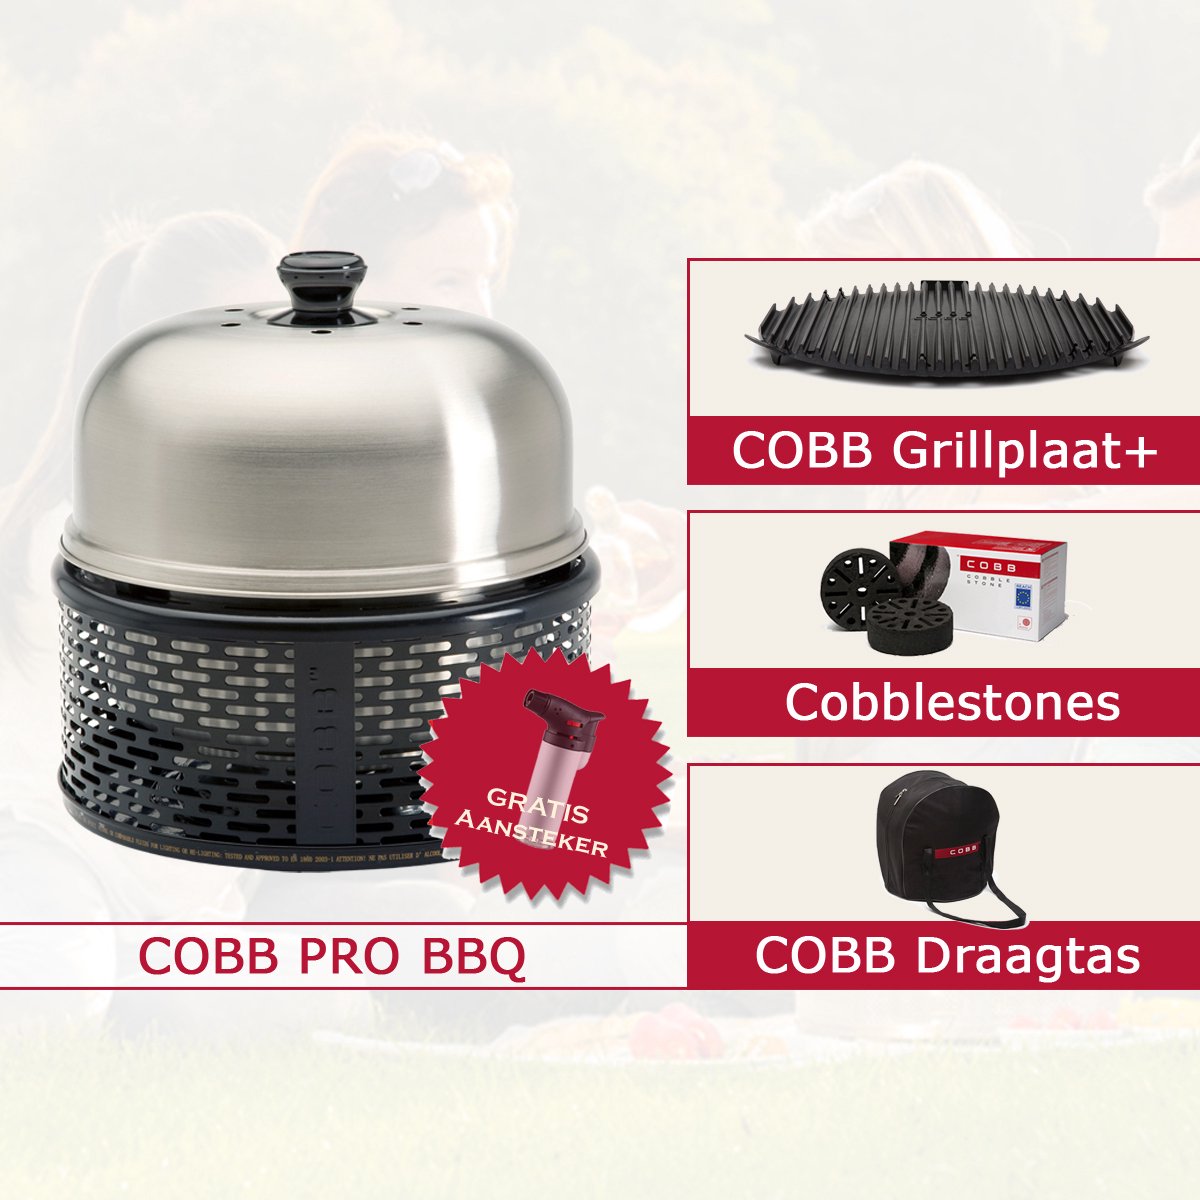 Cobb Pro Combi Deal - Grillplaat + Cobblestones | bol.com